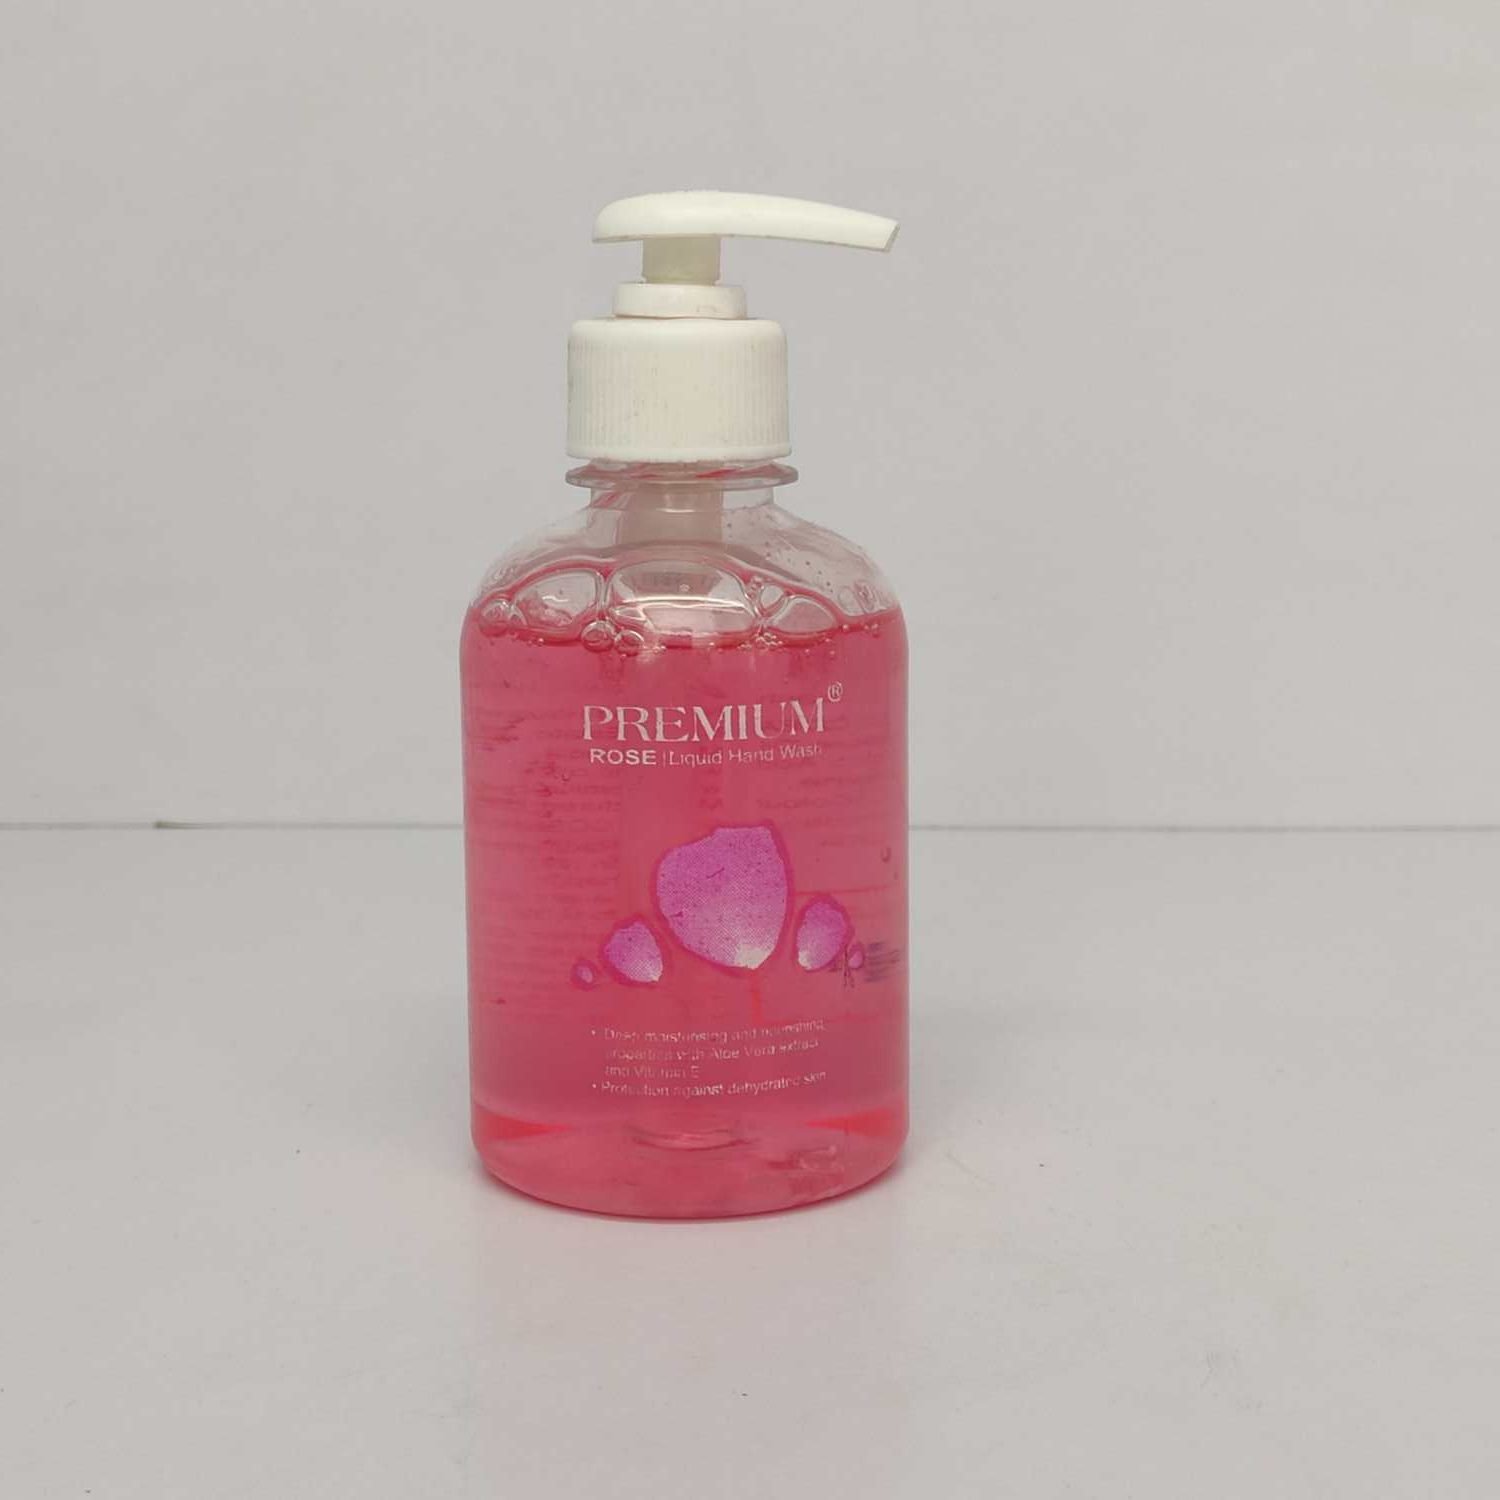 Premium Rose liquid hand wash, 250ml